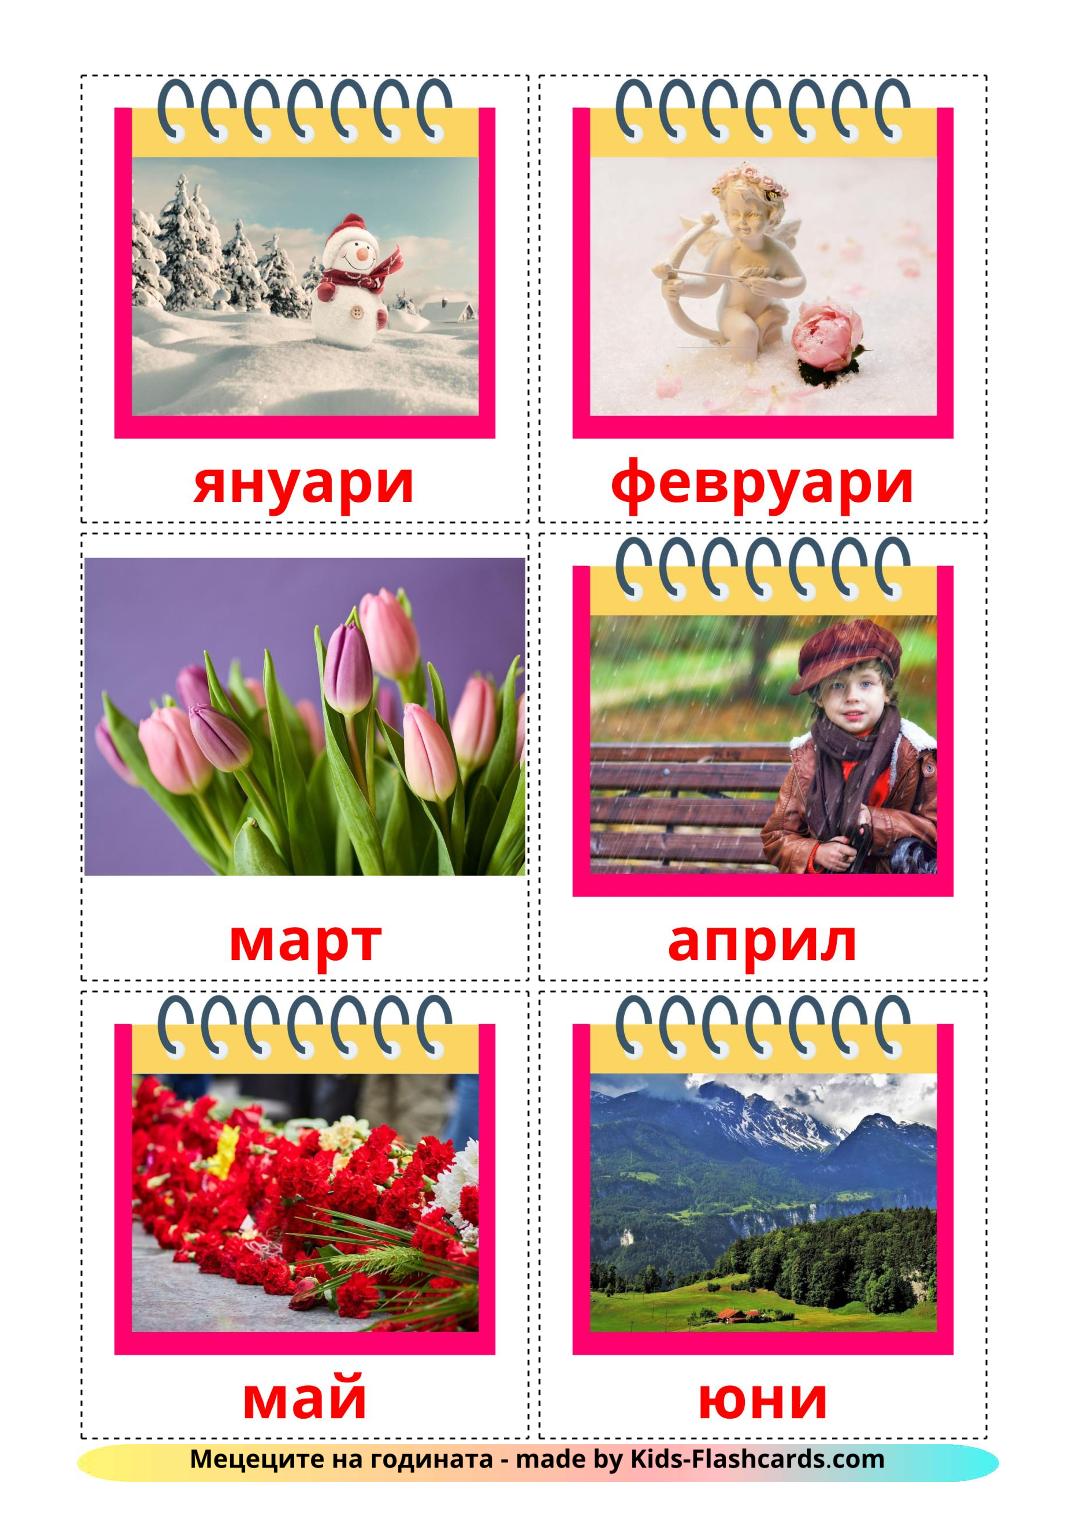 Meses do ano - 12 Flashcards búlgaroes gratuitos para impressão